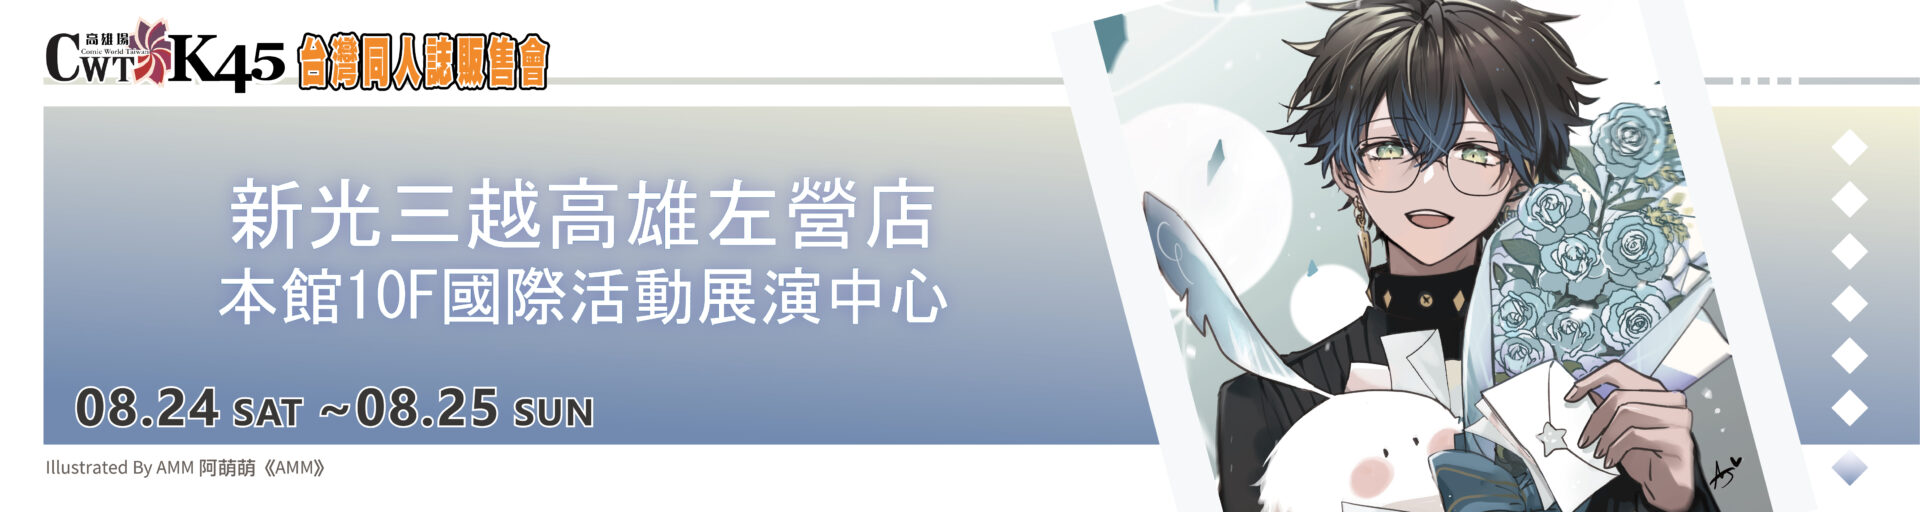 【CWT台灣同人誌販售會】最新活動門票優惠、時間、地點活動資訊懶人包